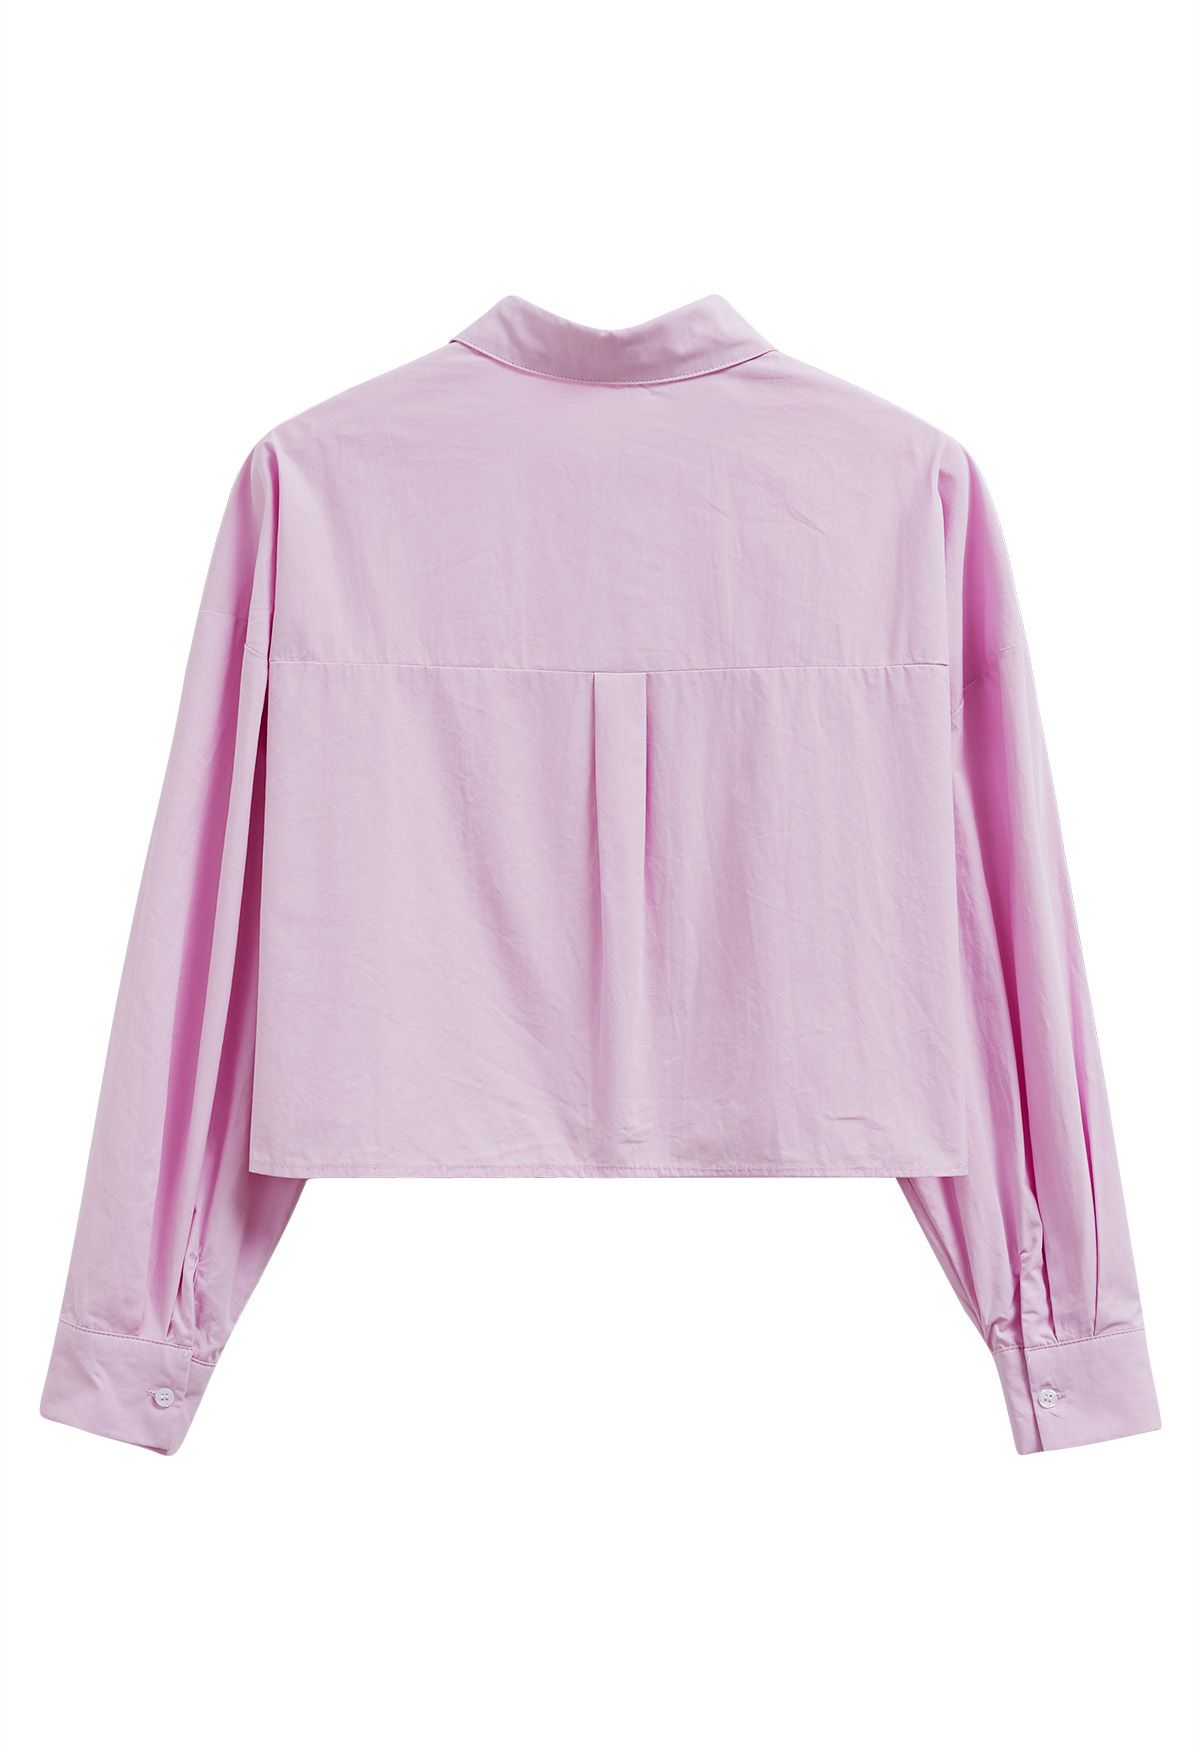 Camisa corta elegante con botones en rosa